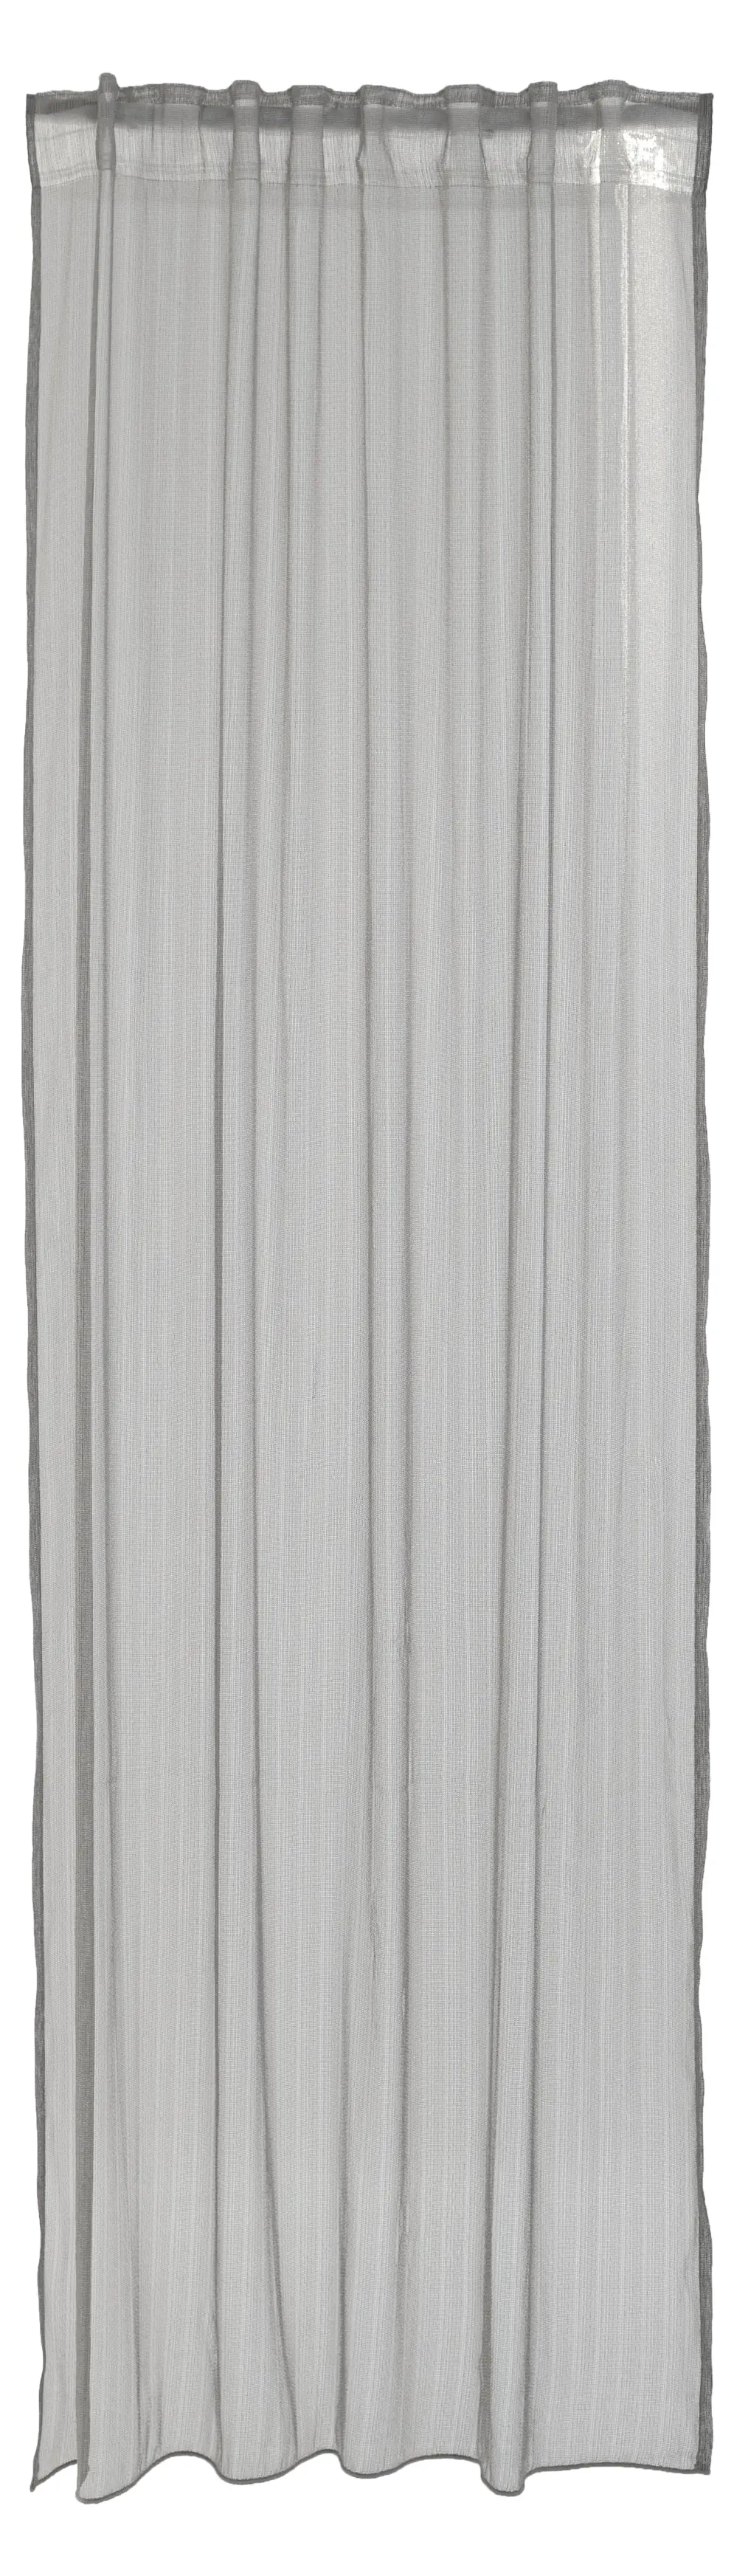 streifen silber Vorhang modern